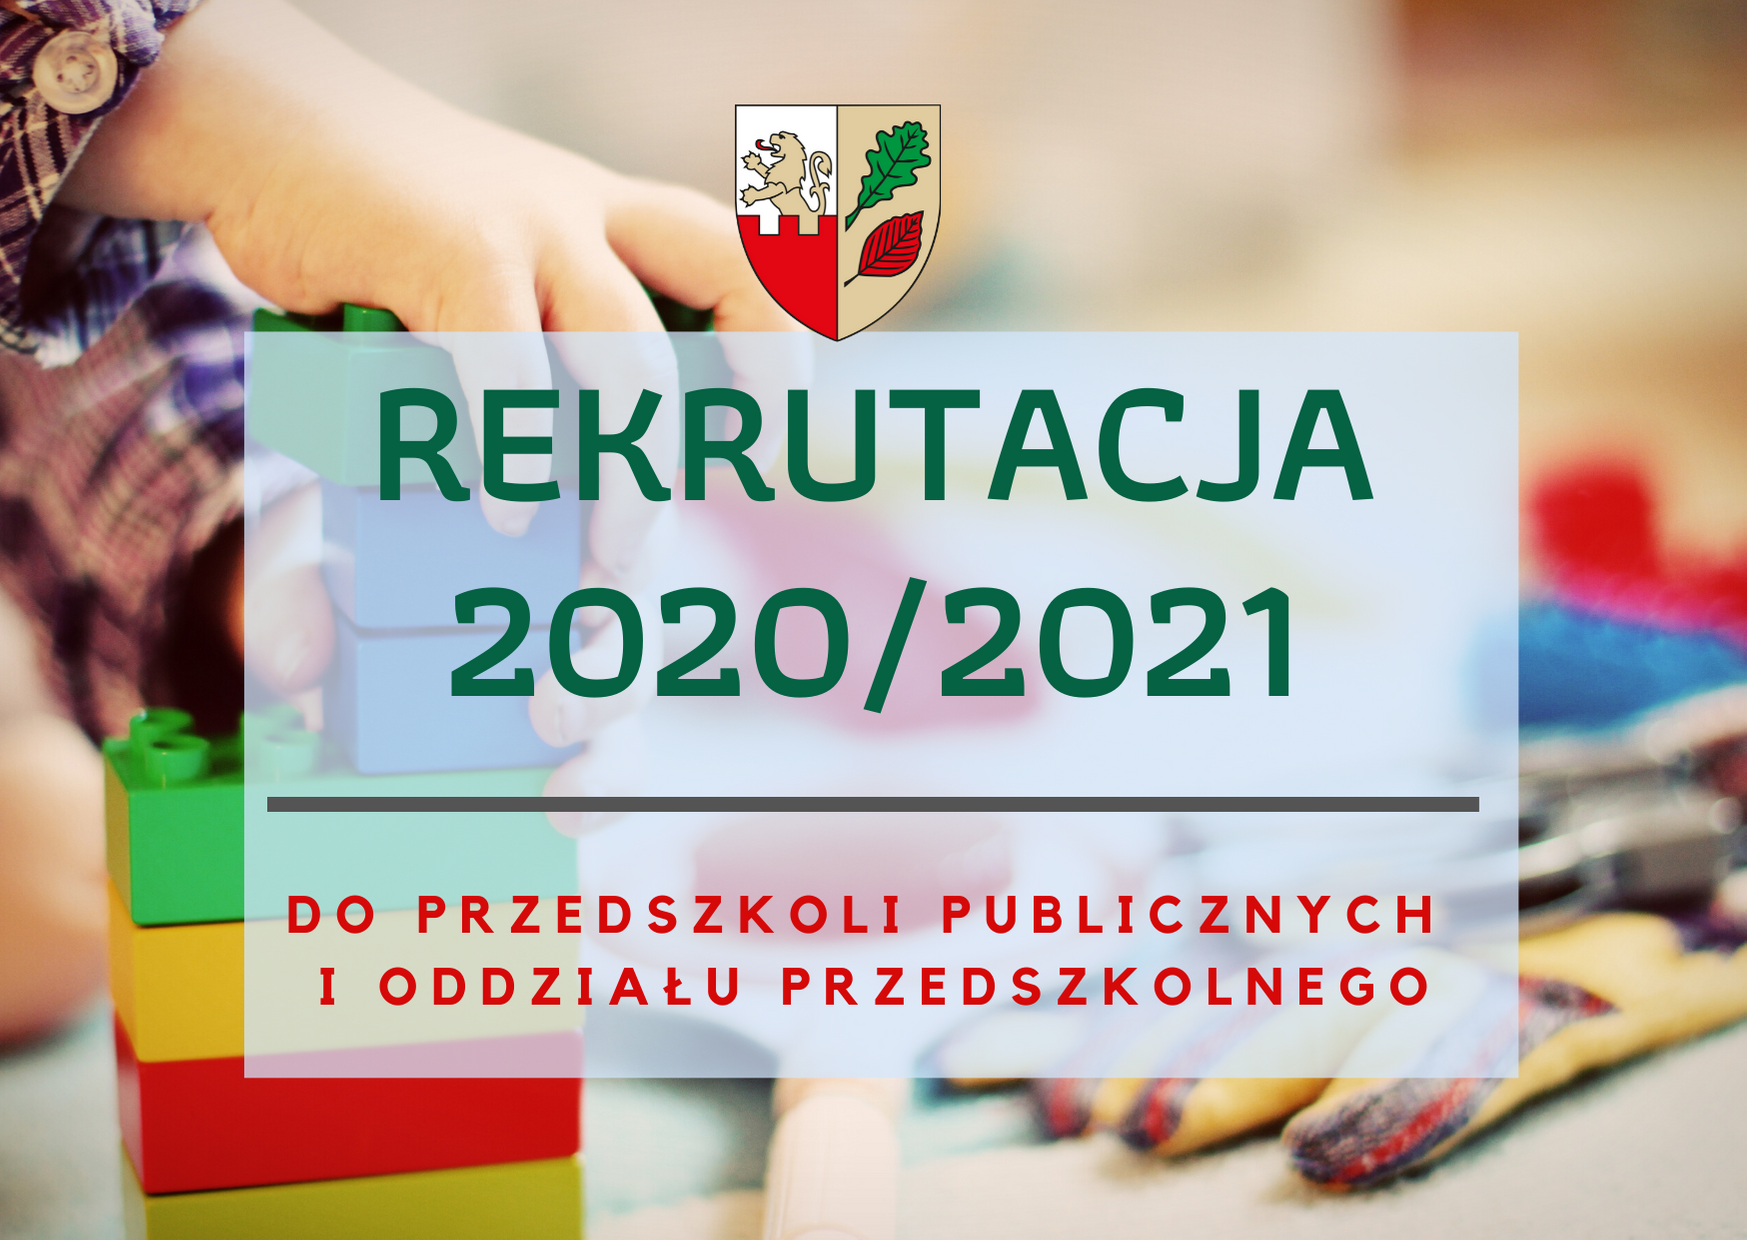 Rekrutacja dzieci do przedszkoli publicznych i oddziału przedszkolnego na rok szkolny 2020/2021